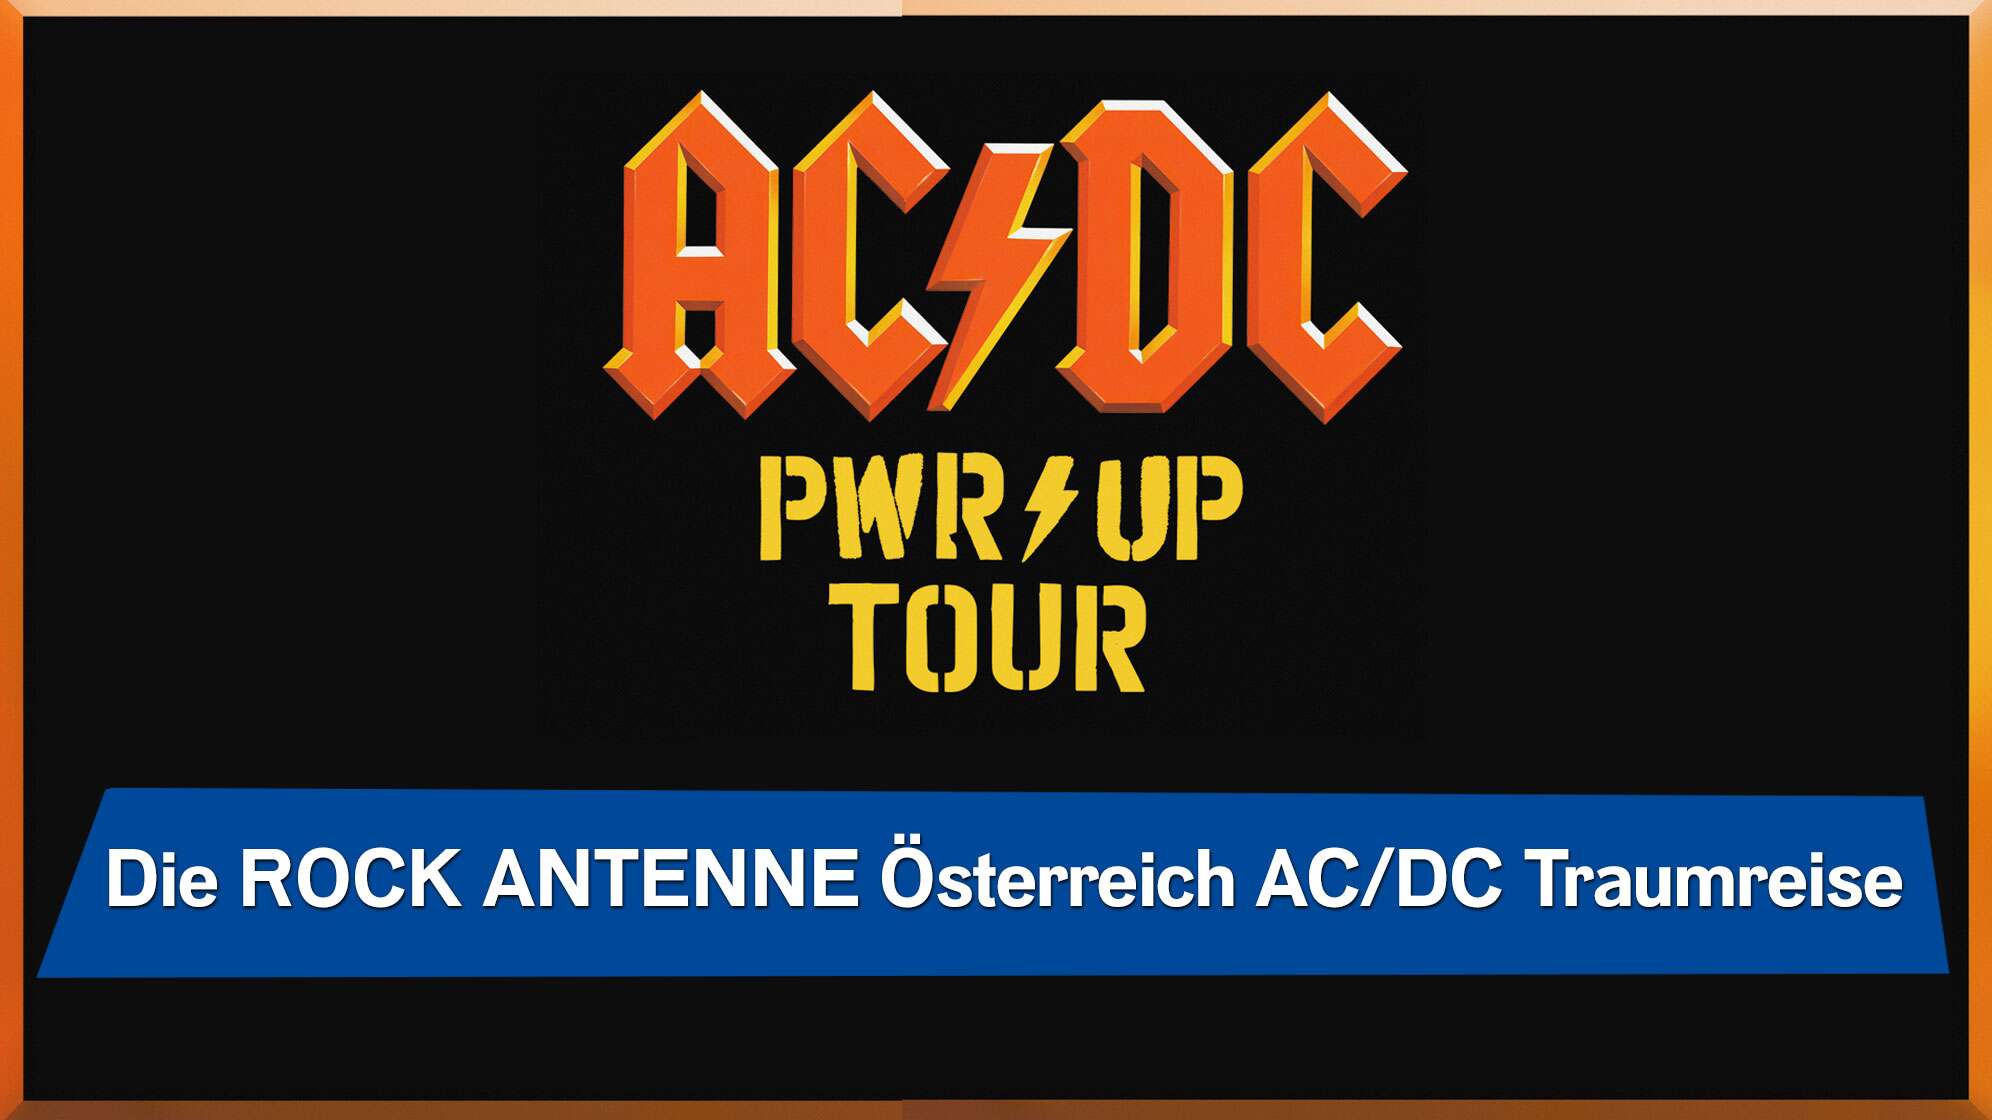 Schwarzer Hintergrund mit rotem AC/DC Logo, dazu gelbem Power Up Tour-Schriftzug, dazu der Text: Die ROCK ANTENNE Österreich AC/DC Traumreise